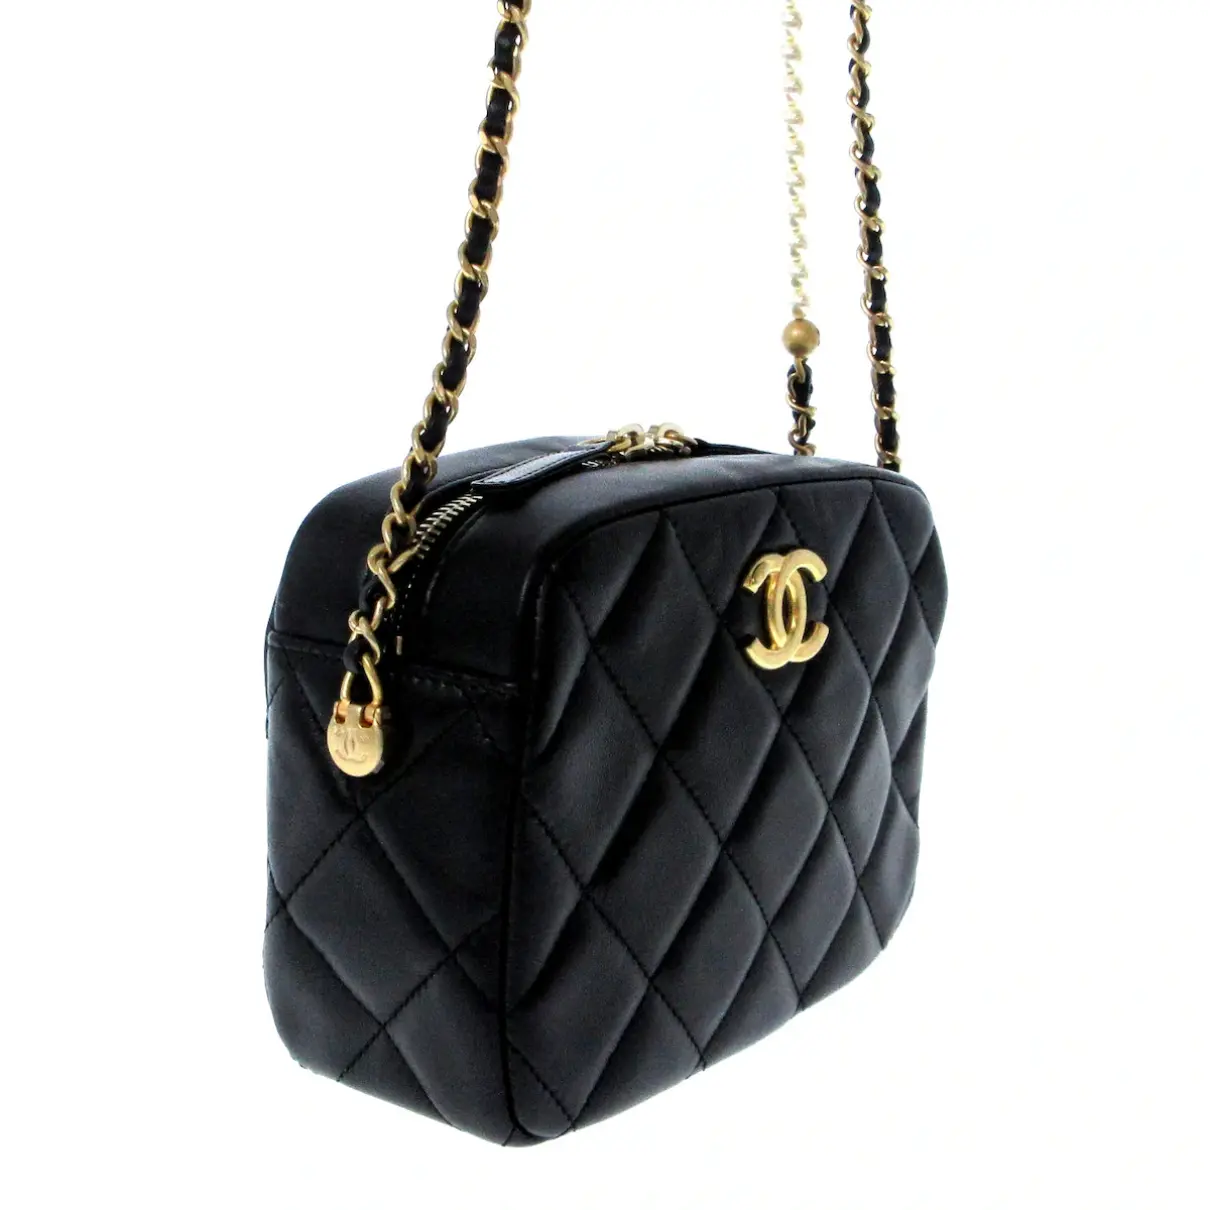 Buy Chanel Camera leather handbag online - Vintage